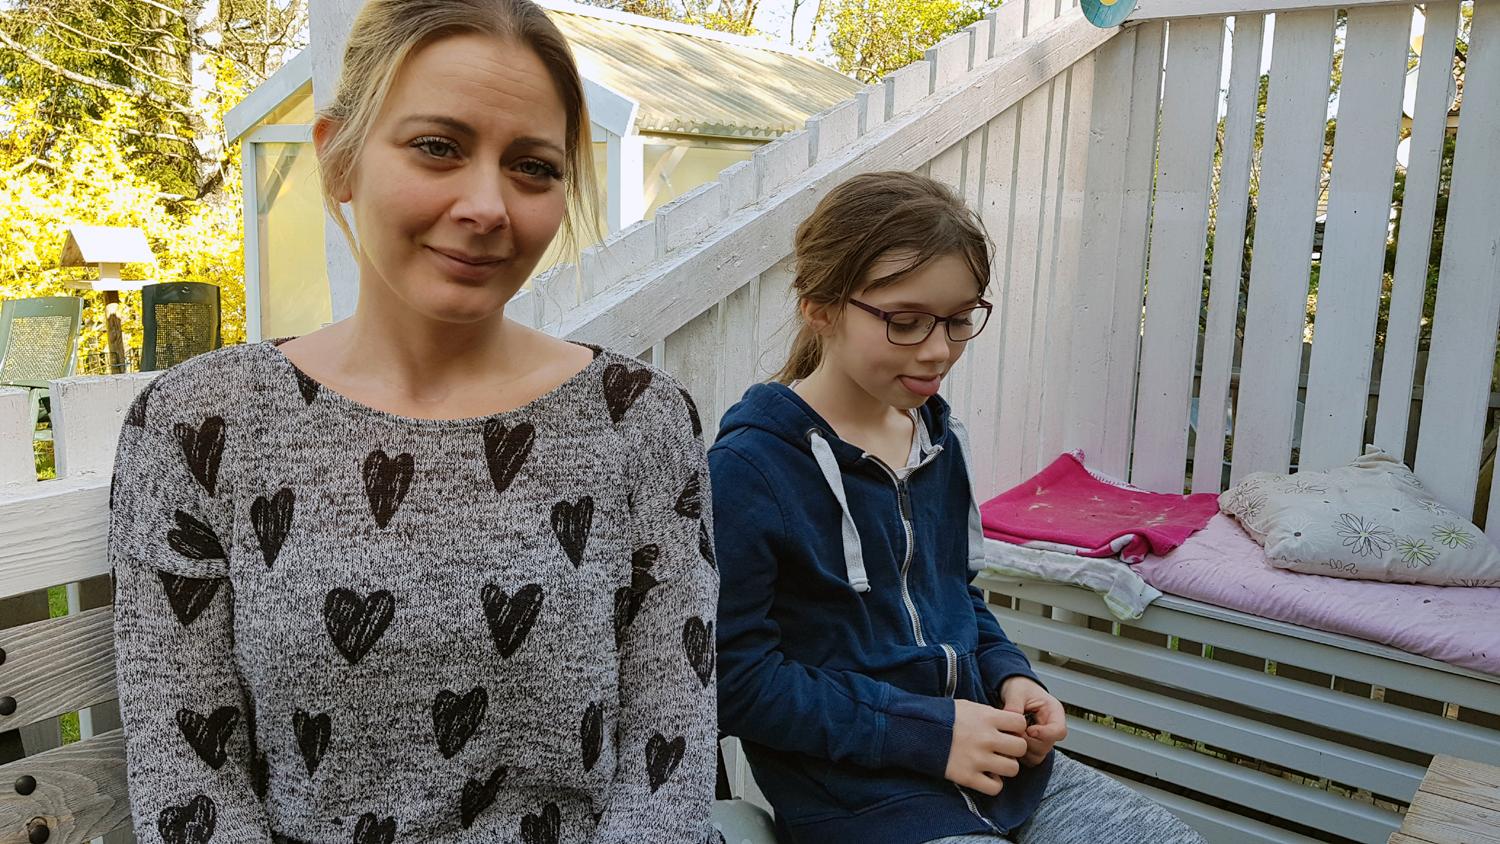 Johanna Wetterberg i Svenshögen valde på måndagen att inte låta sina barn vara i skolan. ”Det luktar någon blandning mellan gummi och diesel. Det irriterar i halsen och i näsan. Det finns inga garantier för att detta inte är farligt”, säger hon. Här med dottern Vilma, 9.